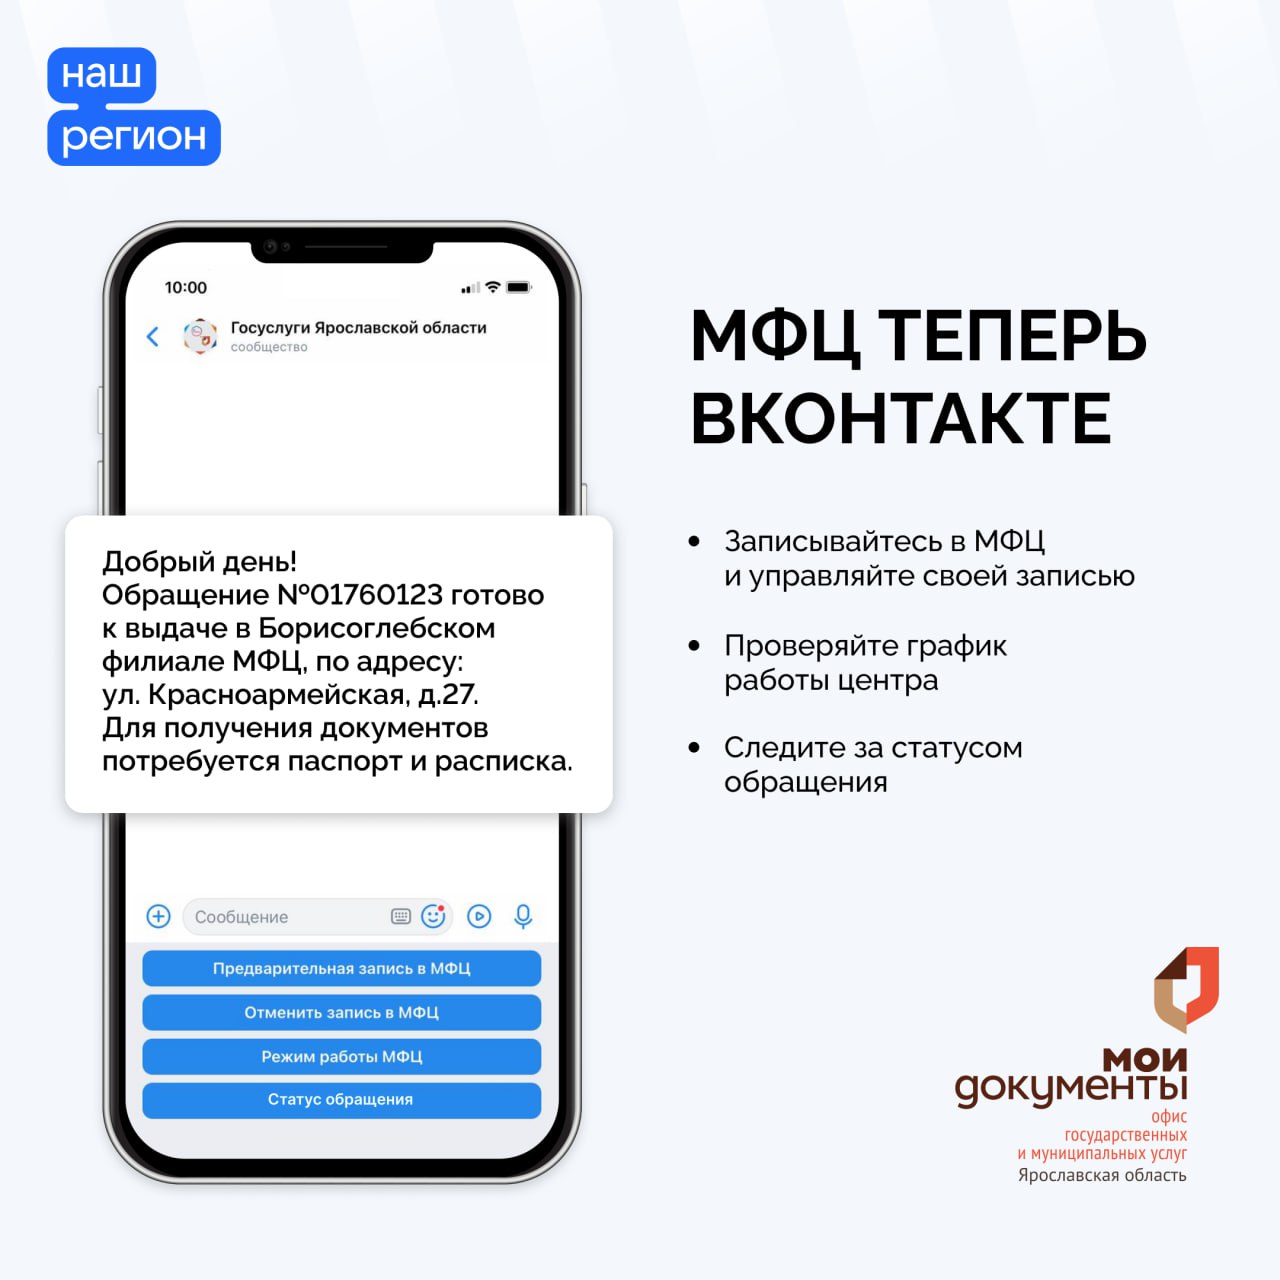 Ярославская область первой в России запустила систему взаимодействия МФЦ с гражданами «ВКонтакте»